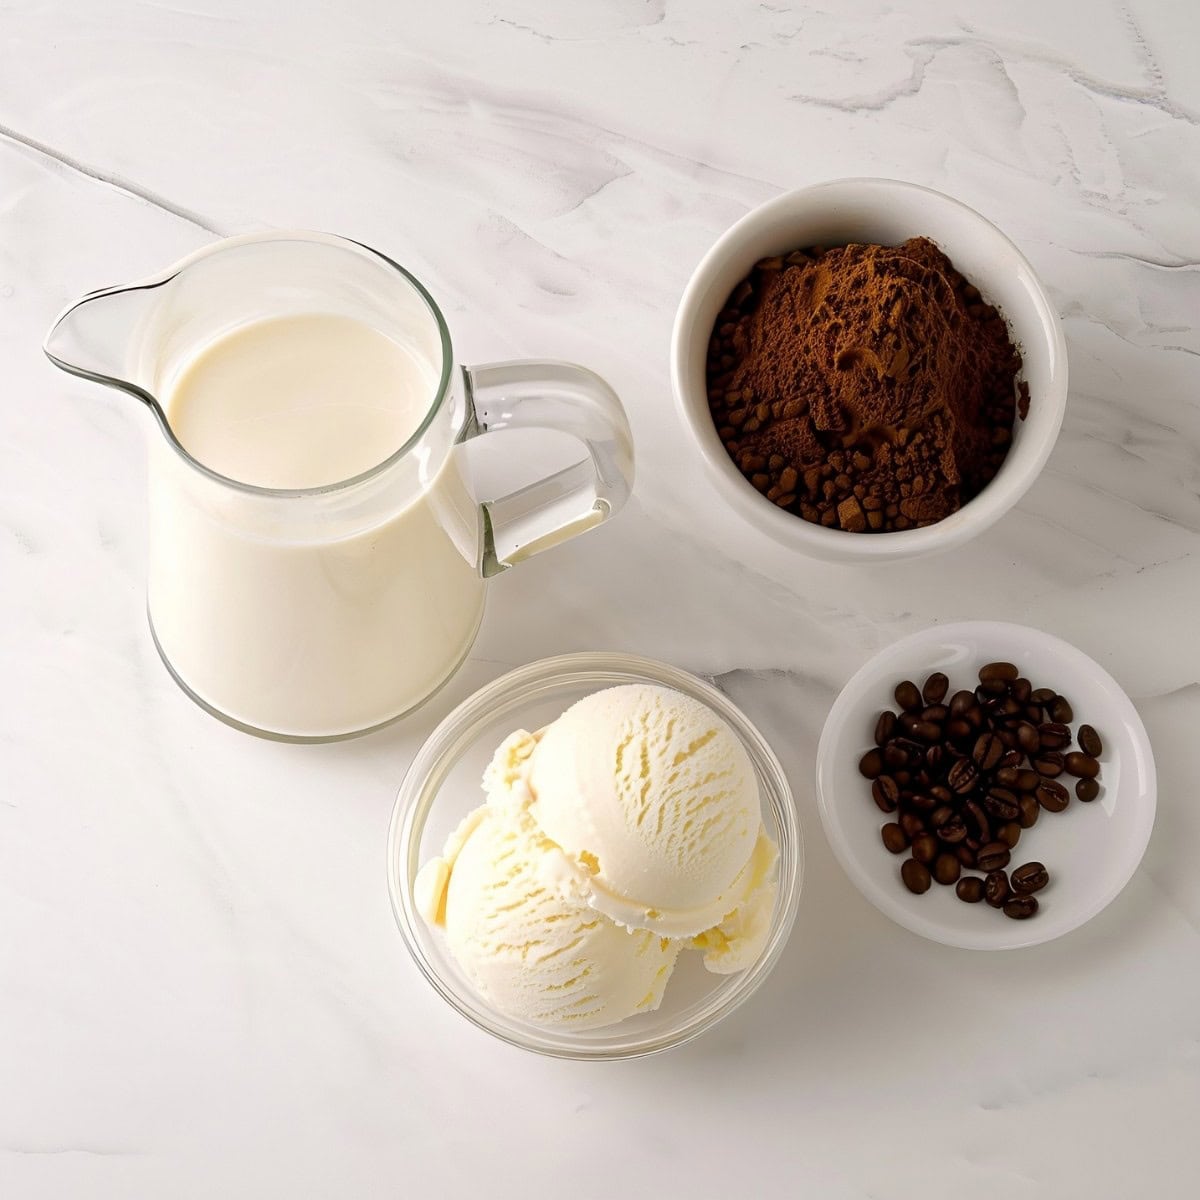 Ingredients for Coffee Milkshake: milk, coffee granules and ice cream